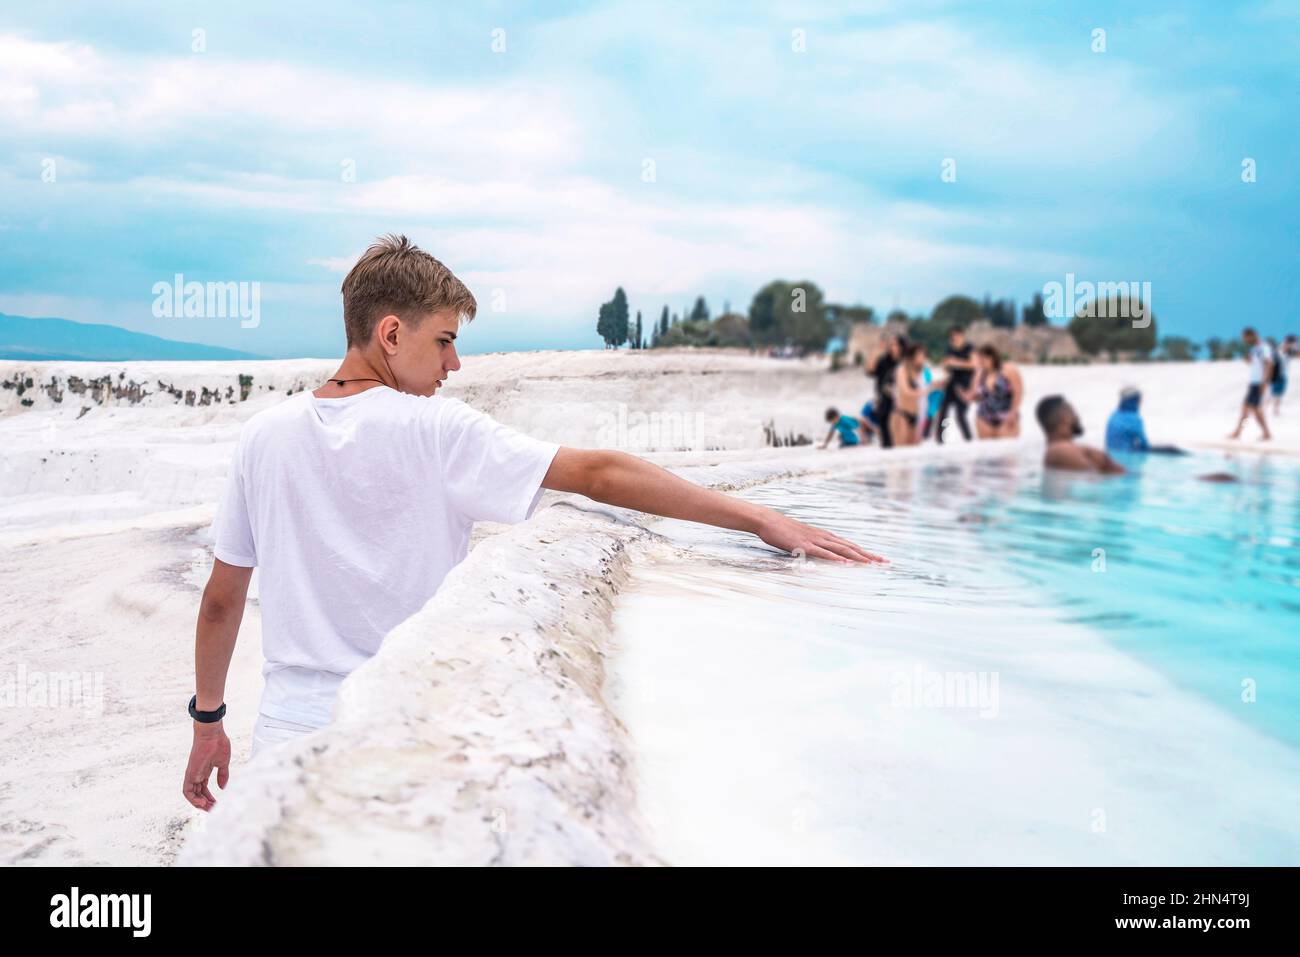 Der süße Teenager im Alter von 15-18 Jahren streckte seine Hand aus und berührte das Wasser im Travertin-Pool in Pamukkale. Stockfoto